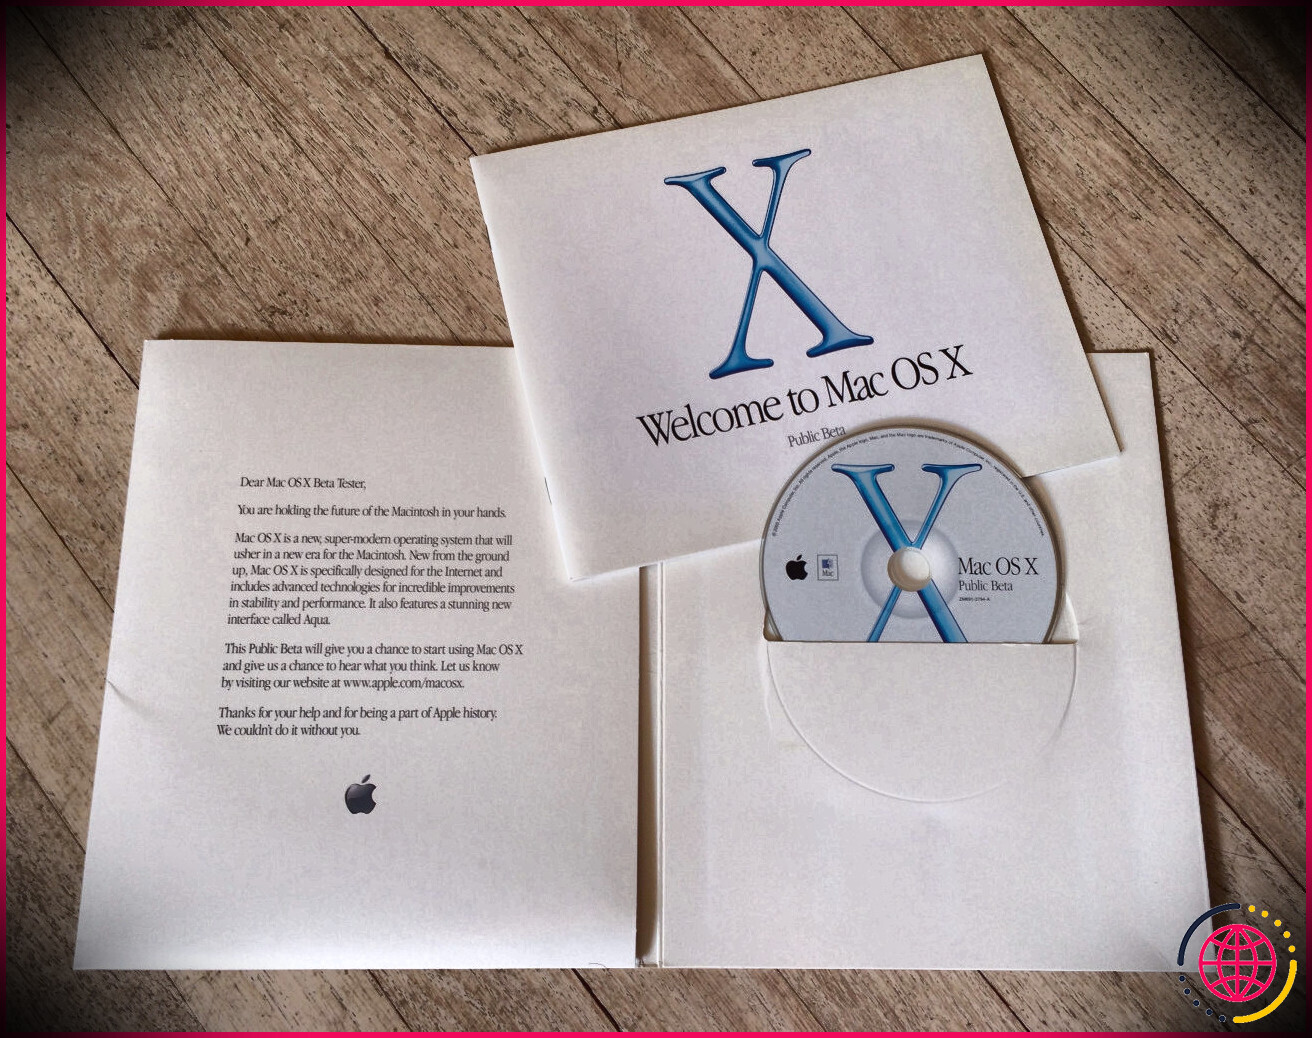 Le disque d'installation de Mac OS X Public Beta se trouve sur une table dans sa pochette